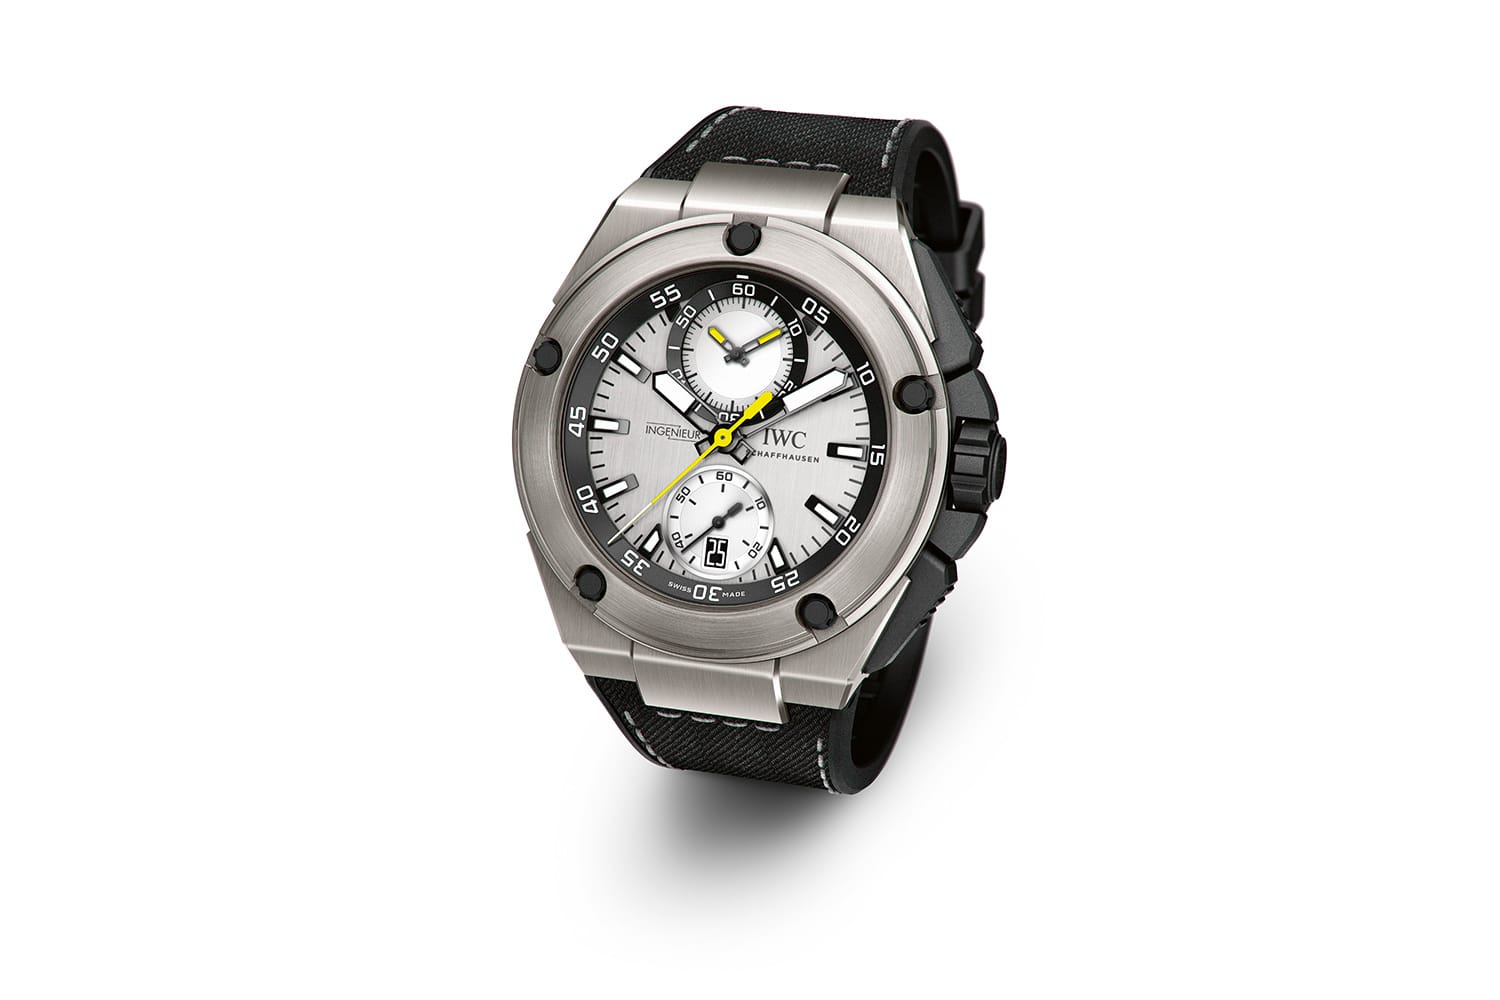 Die IWC-Uhr Ingenieur Chronograph Edition "Nico Rosberg" liegt bei etwa 12.600 Euro.